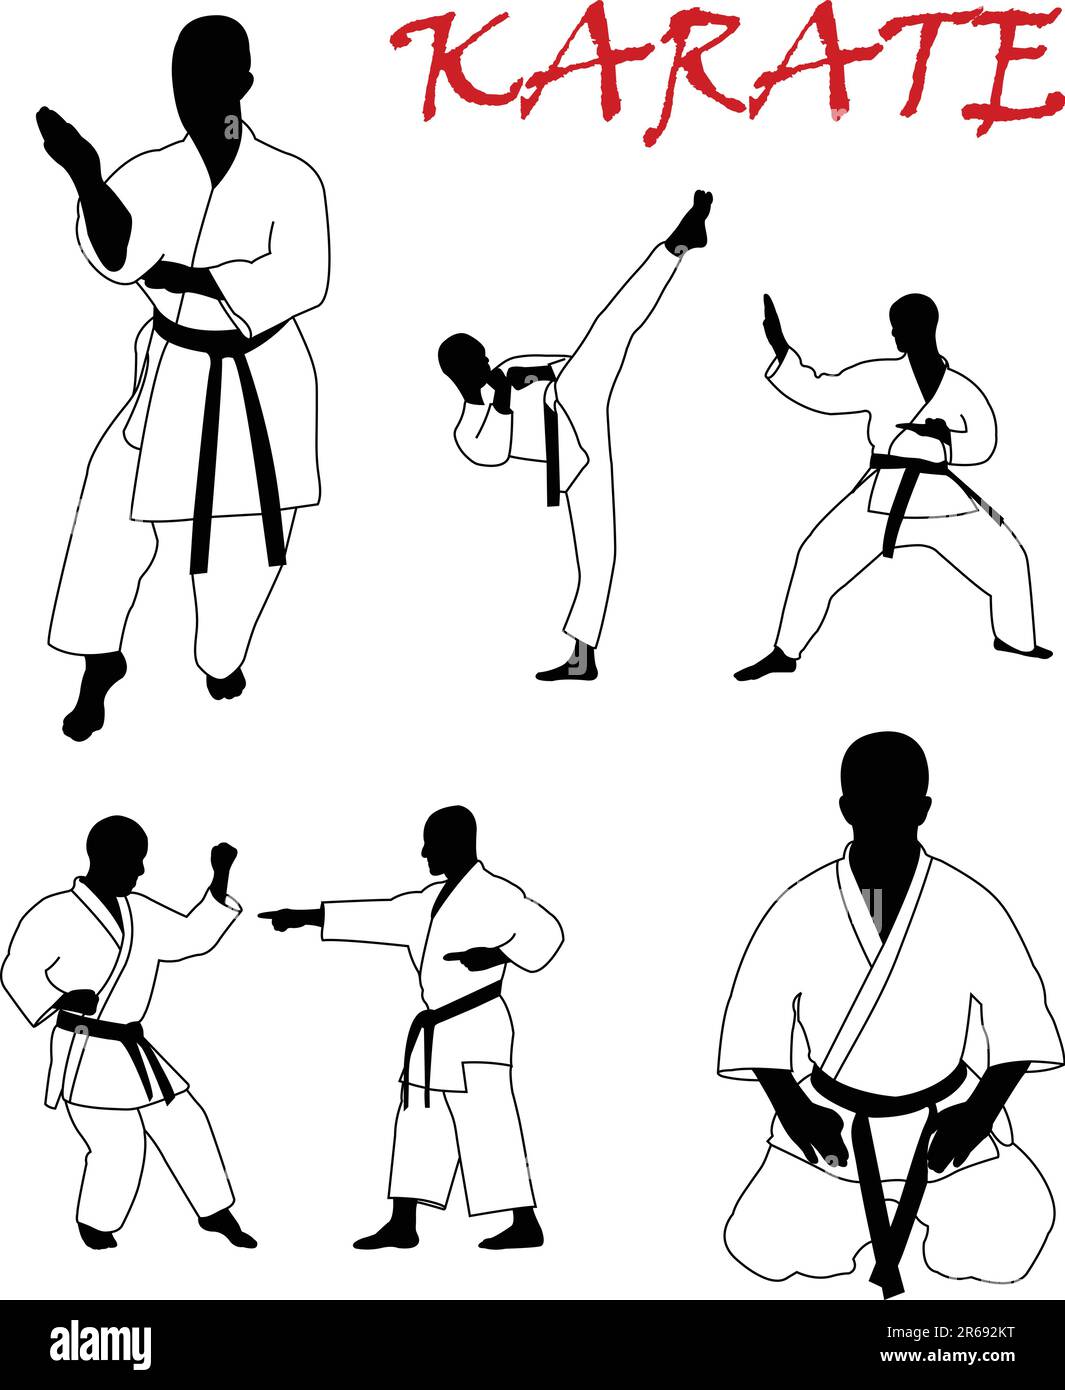 collezione karate - vettore Illustrazione Vettoriale